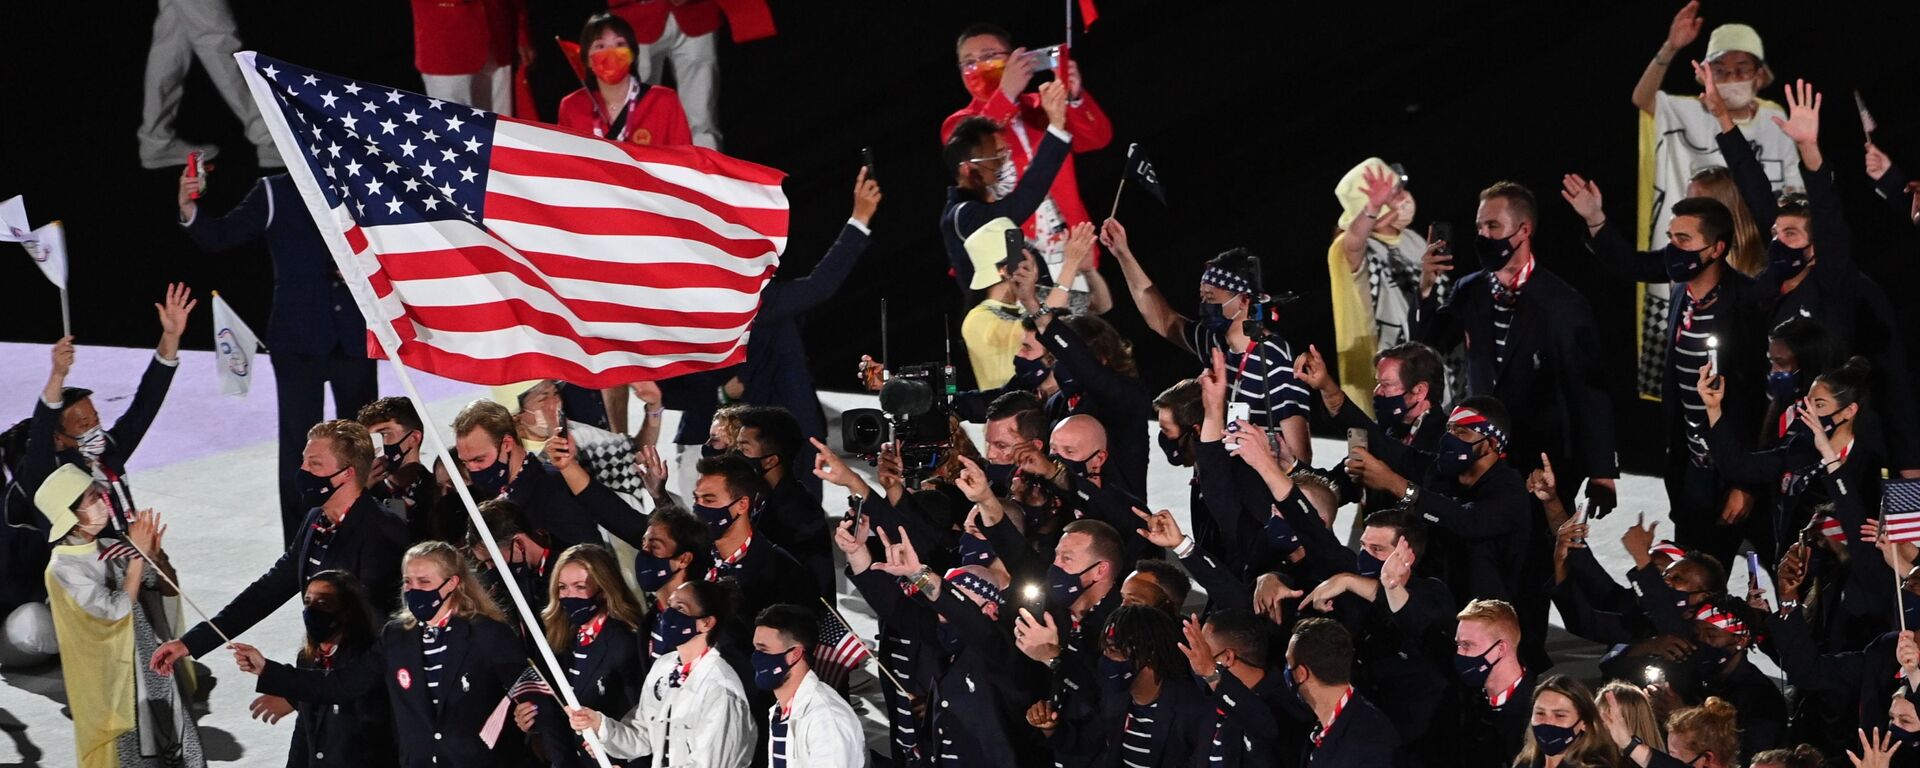 Сборная США на параде атлетов на церемонии открытия летних Олимпийских игр в Токио - Sputnik Кыргызстан, 1920, 03.08.2021